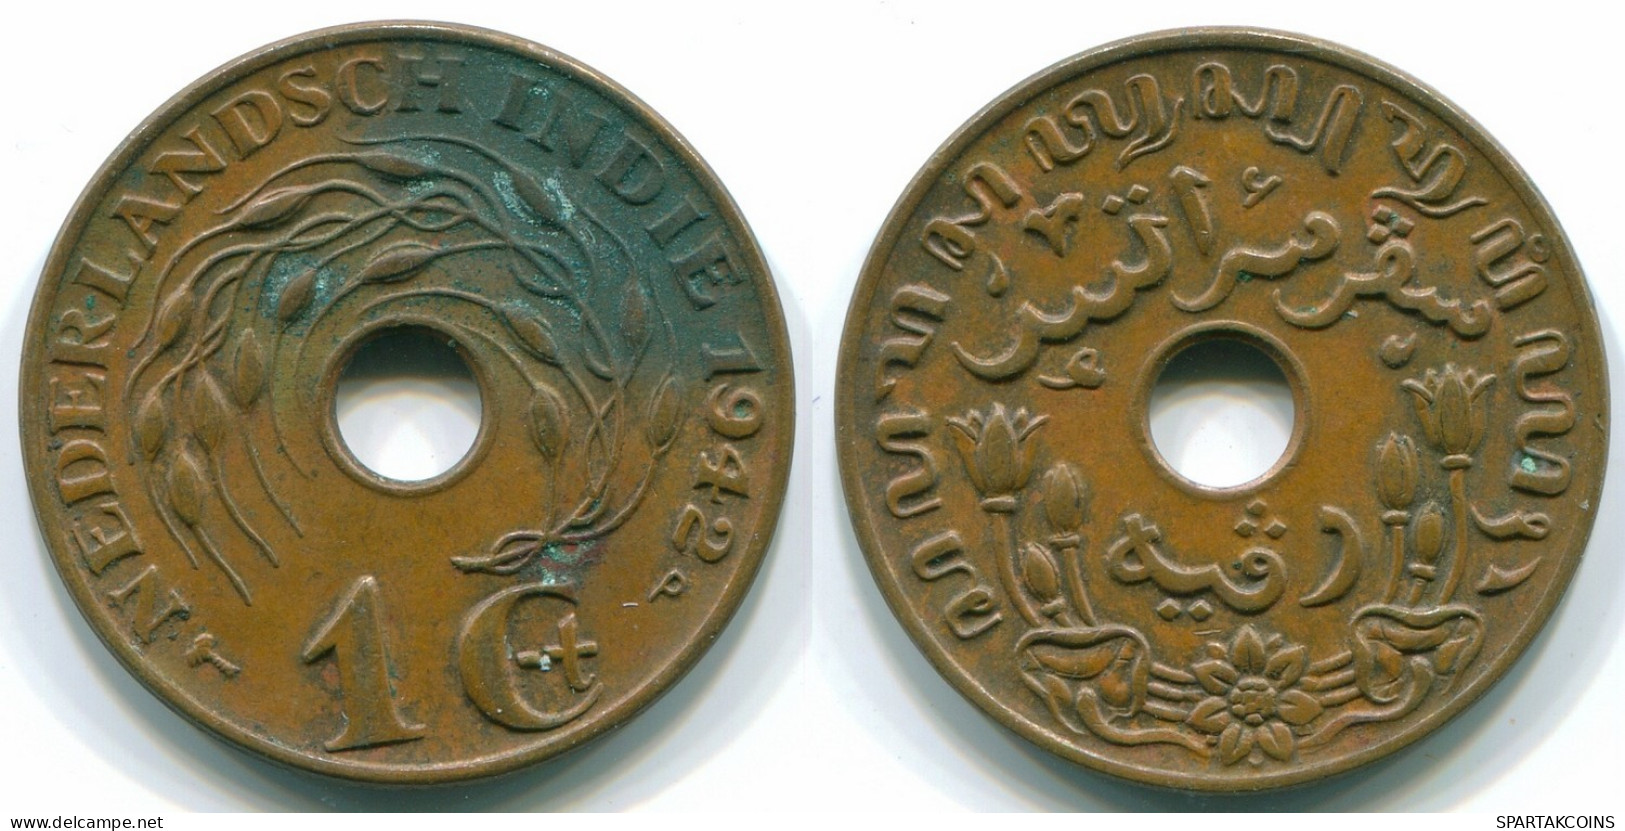 1 CENT 1942 NIEDERLANDE OSTINDIEN INDONESISCH Bronze Koloniale Münze #S10310.D.A - Niederländisch-Indien